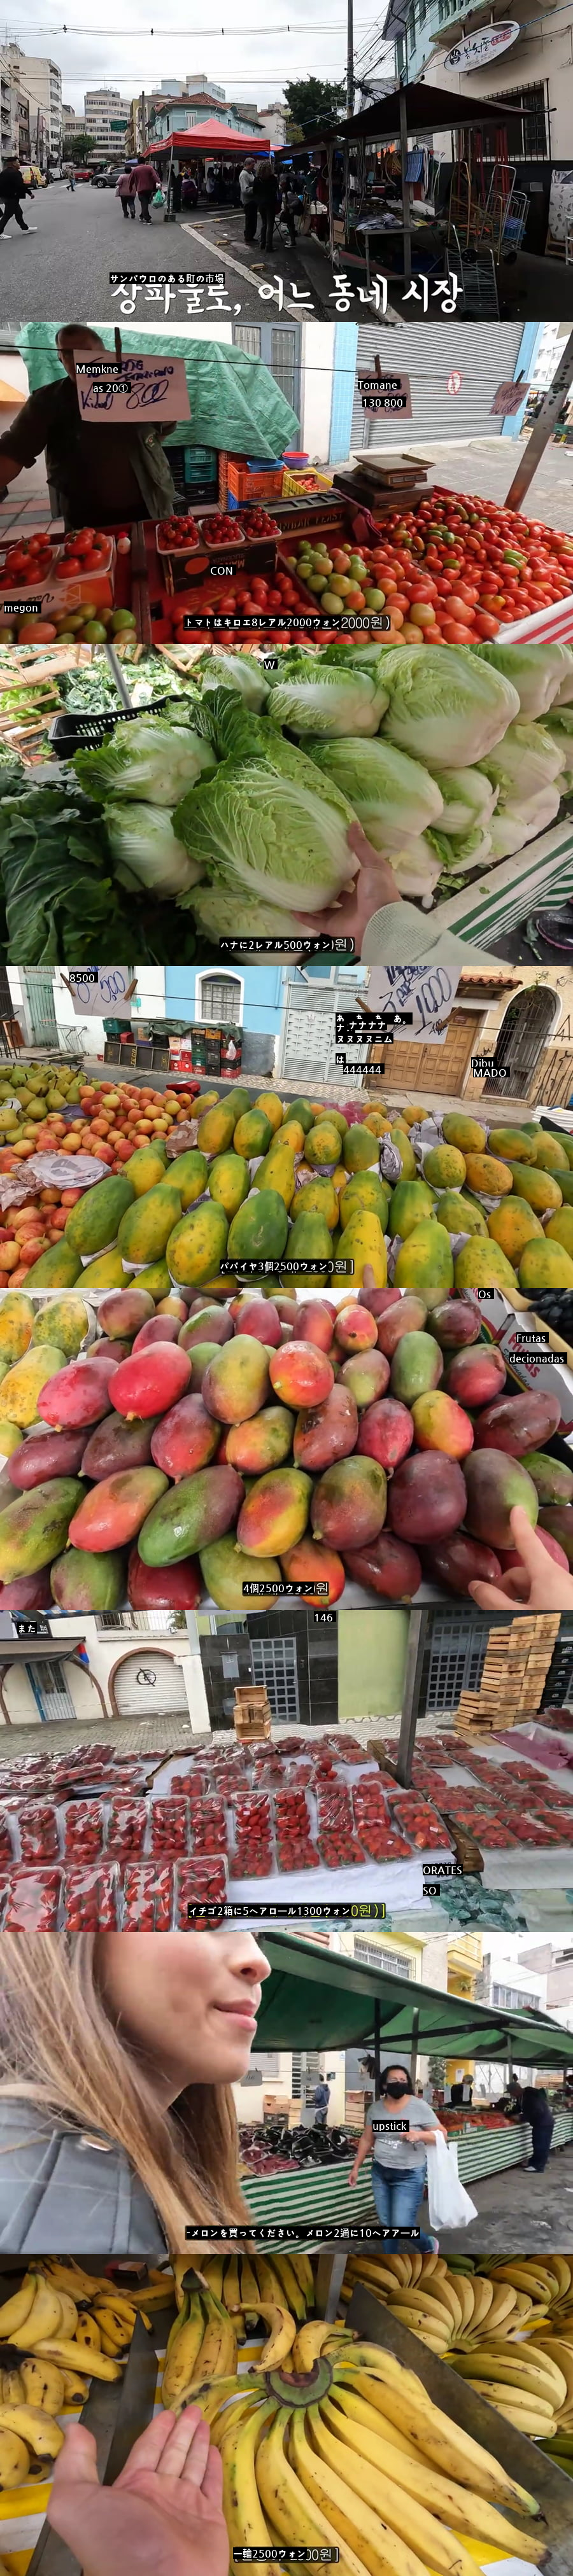 衝撃的なブラジル果物価格水準jpg